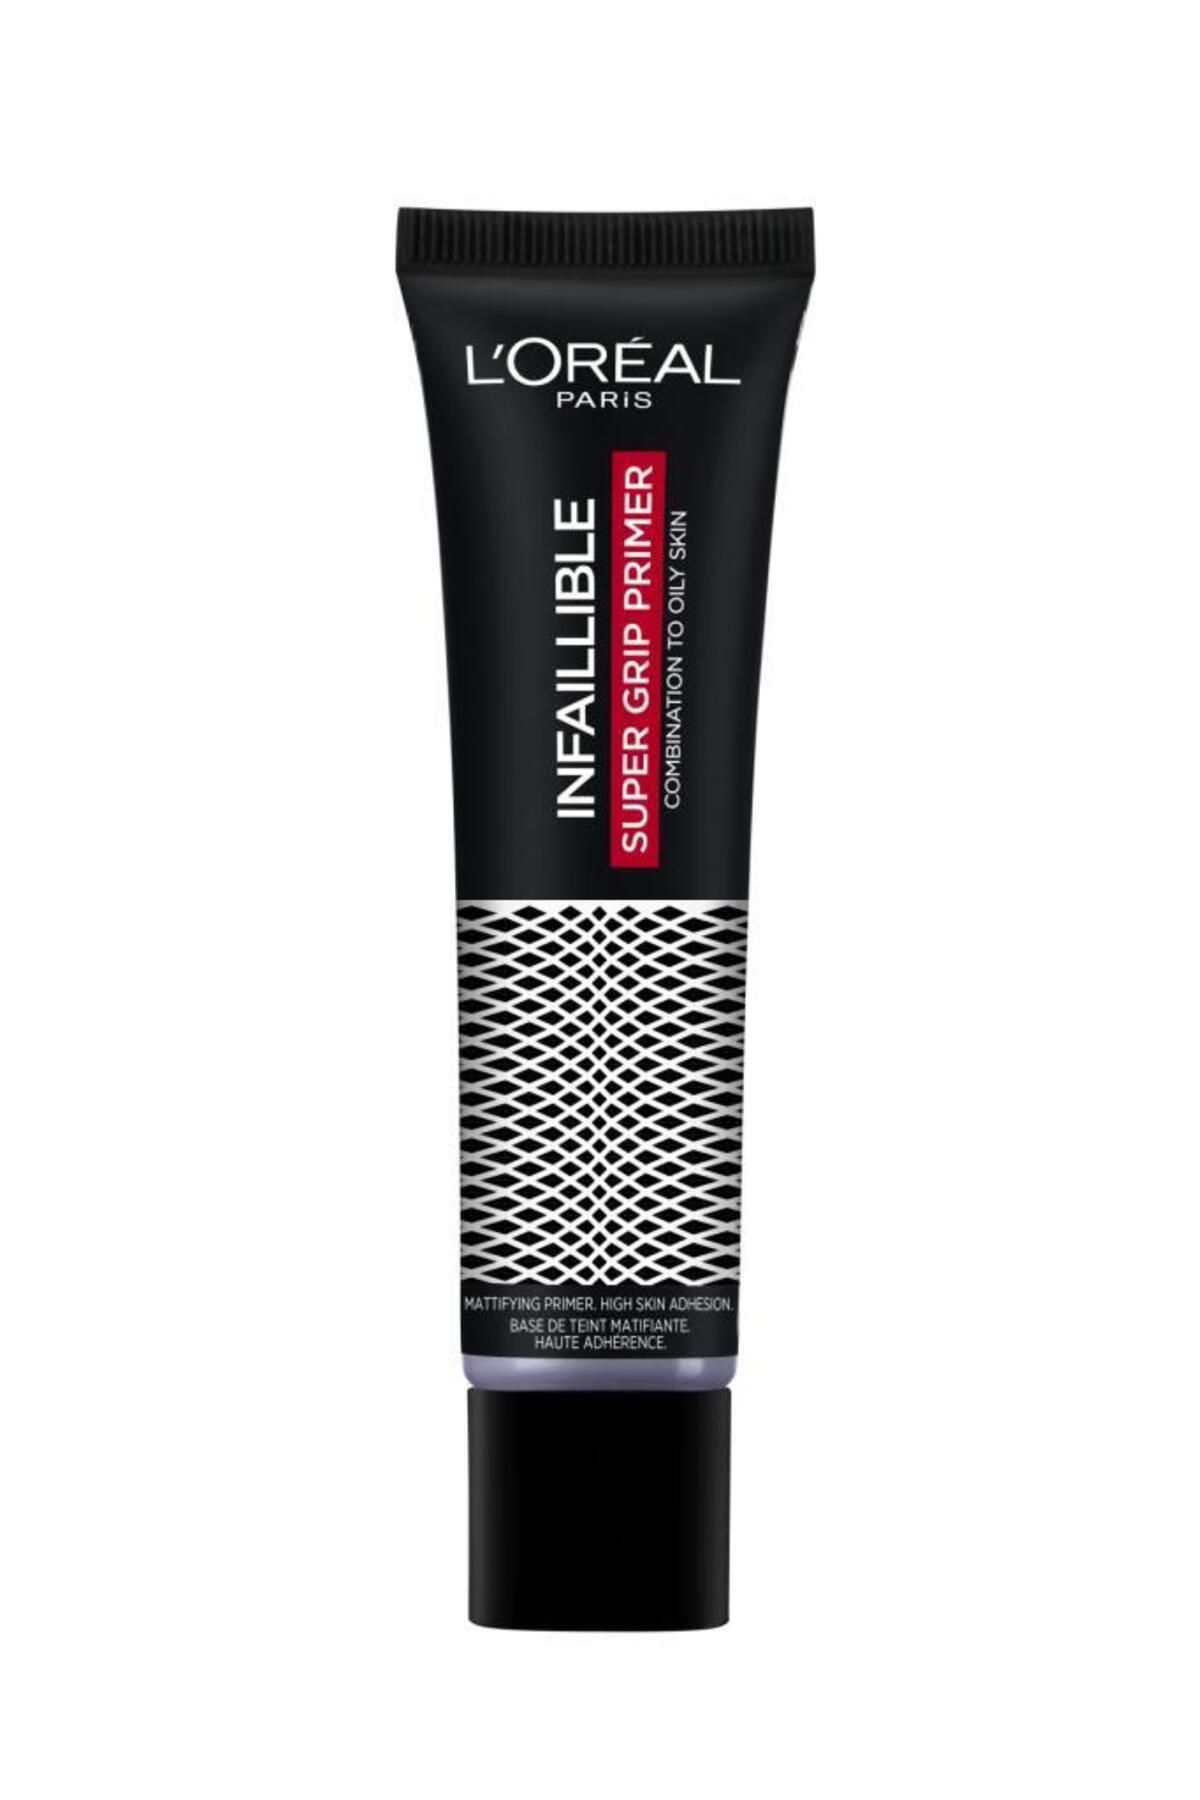 L'Oreal Paris L'oréal Paris Infaillible Super Grip Güçlü Tutuş Sağlayan Makyaj Bazı